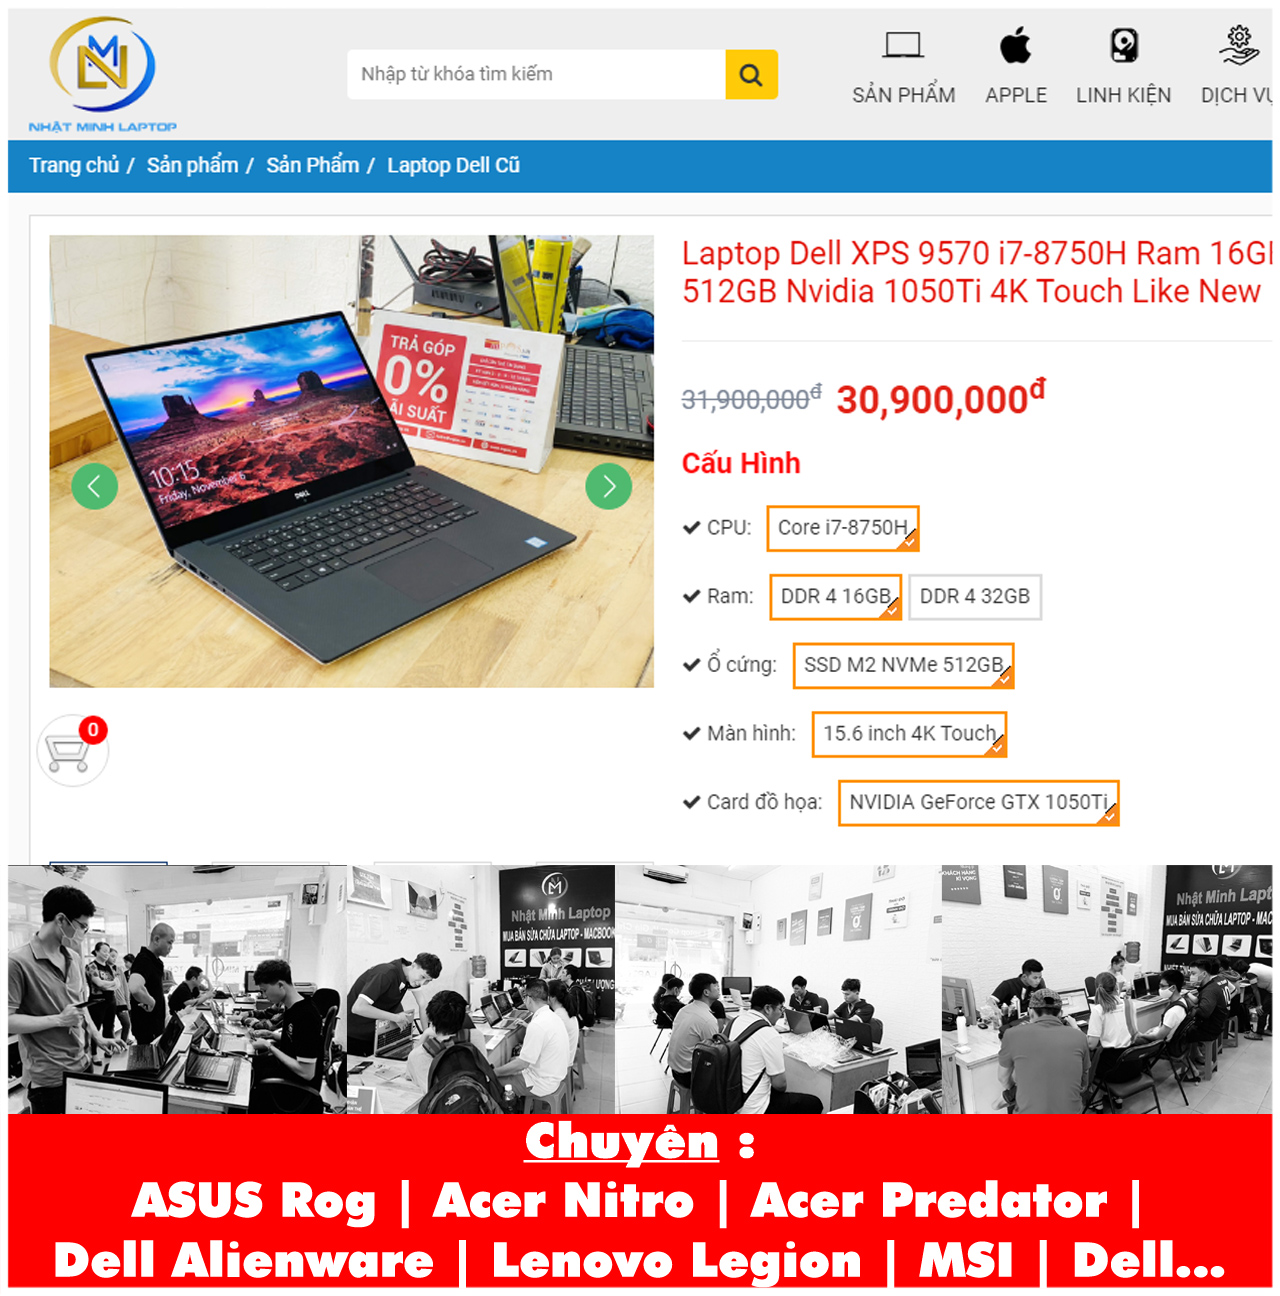 Cách tìm mua Laptop Dell Xps 9570 I7-8750h trên website http://www.shopcongngheso.vn/